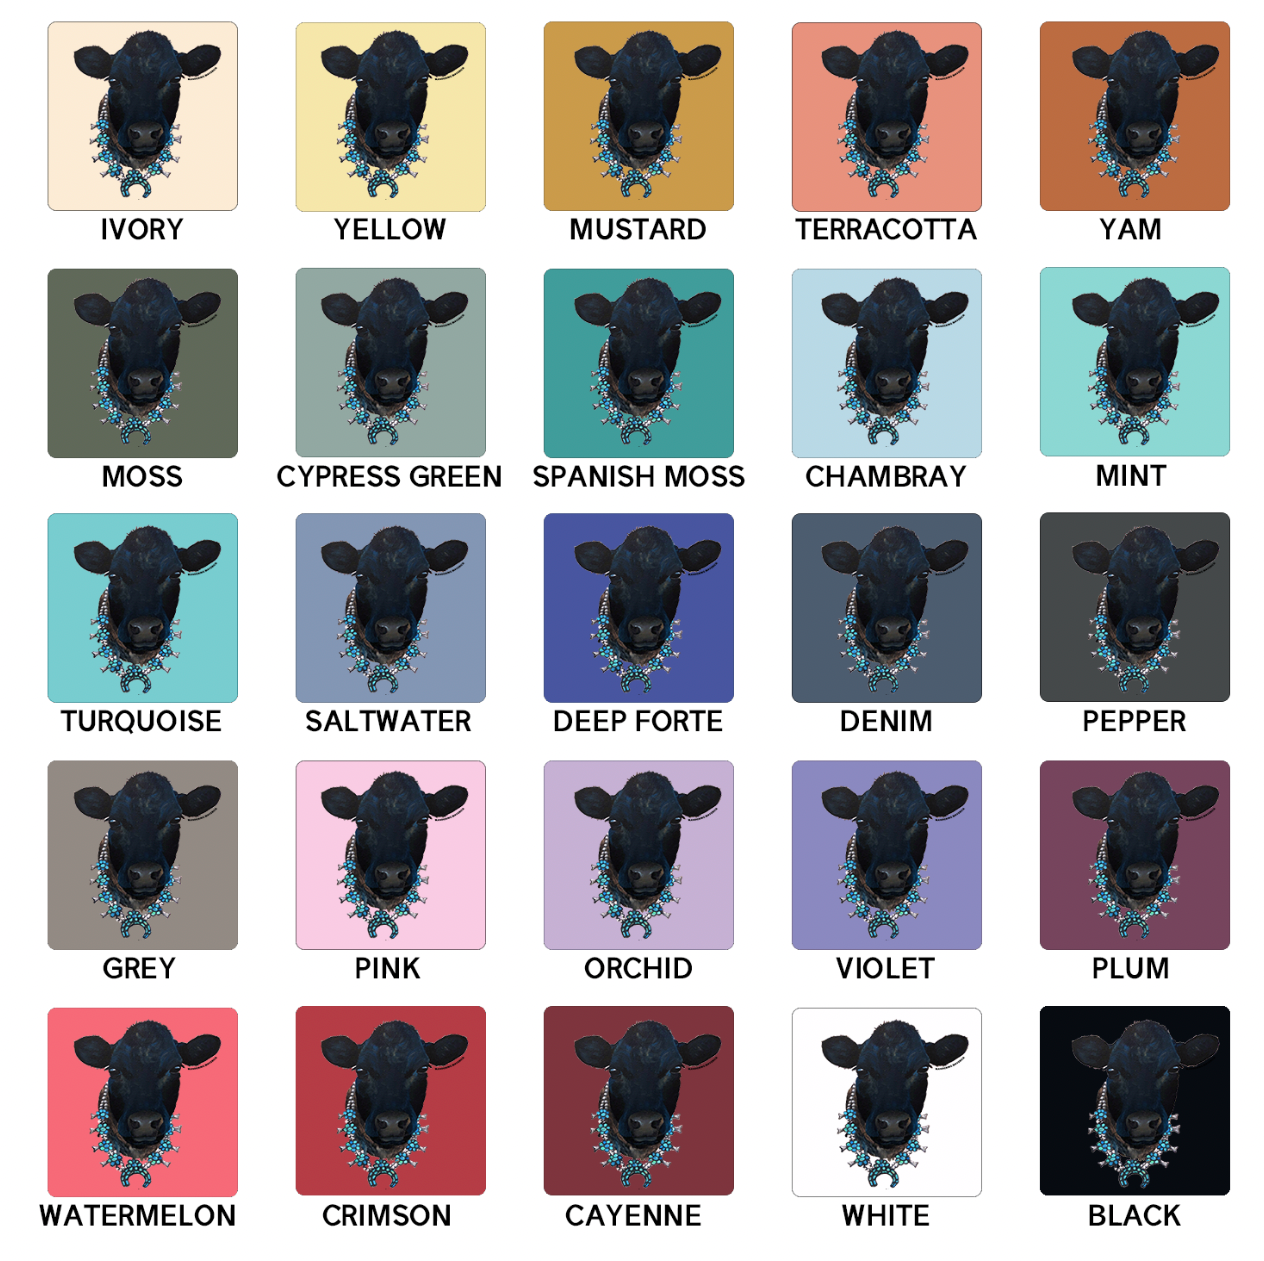 Black Cow Squash ComfortWash/ComfortColor T-Shirt (S-4XL) - Multiple Colors!